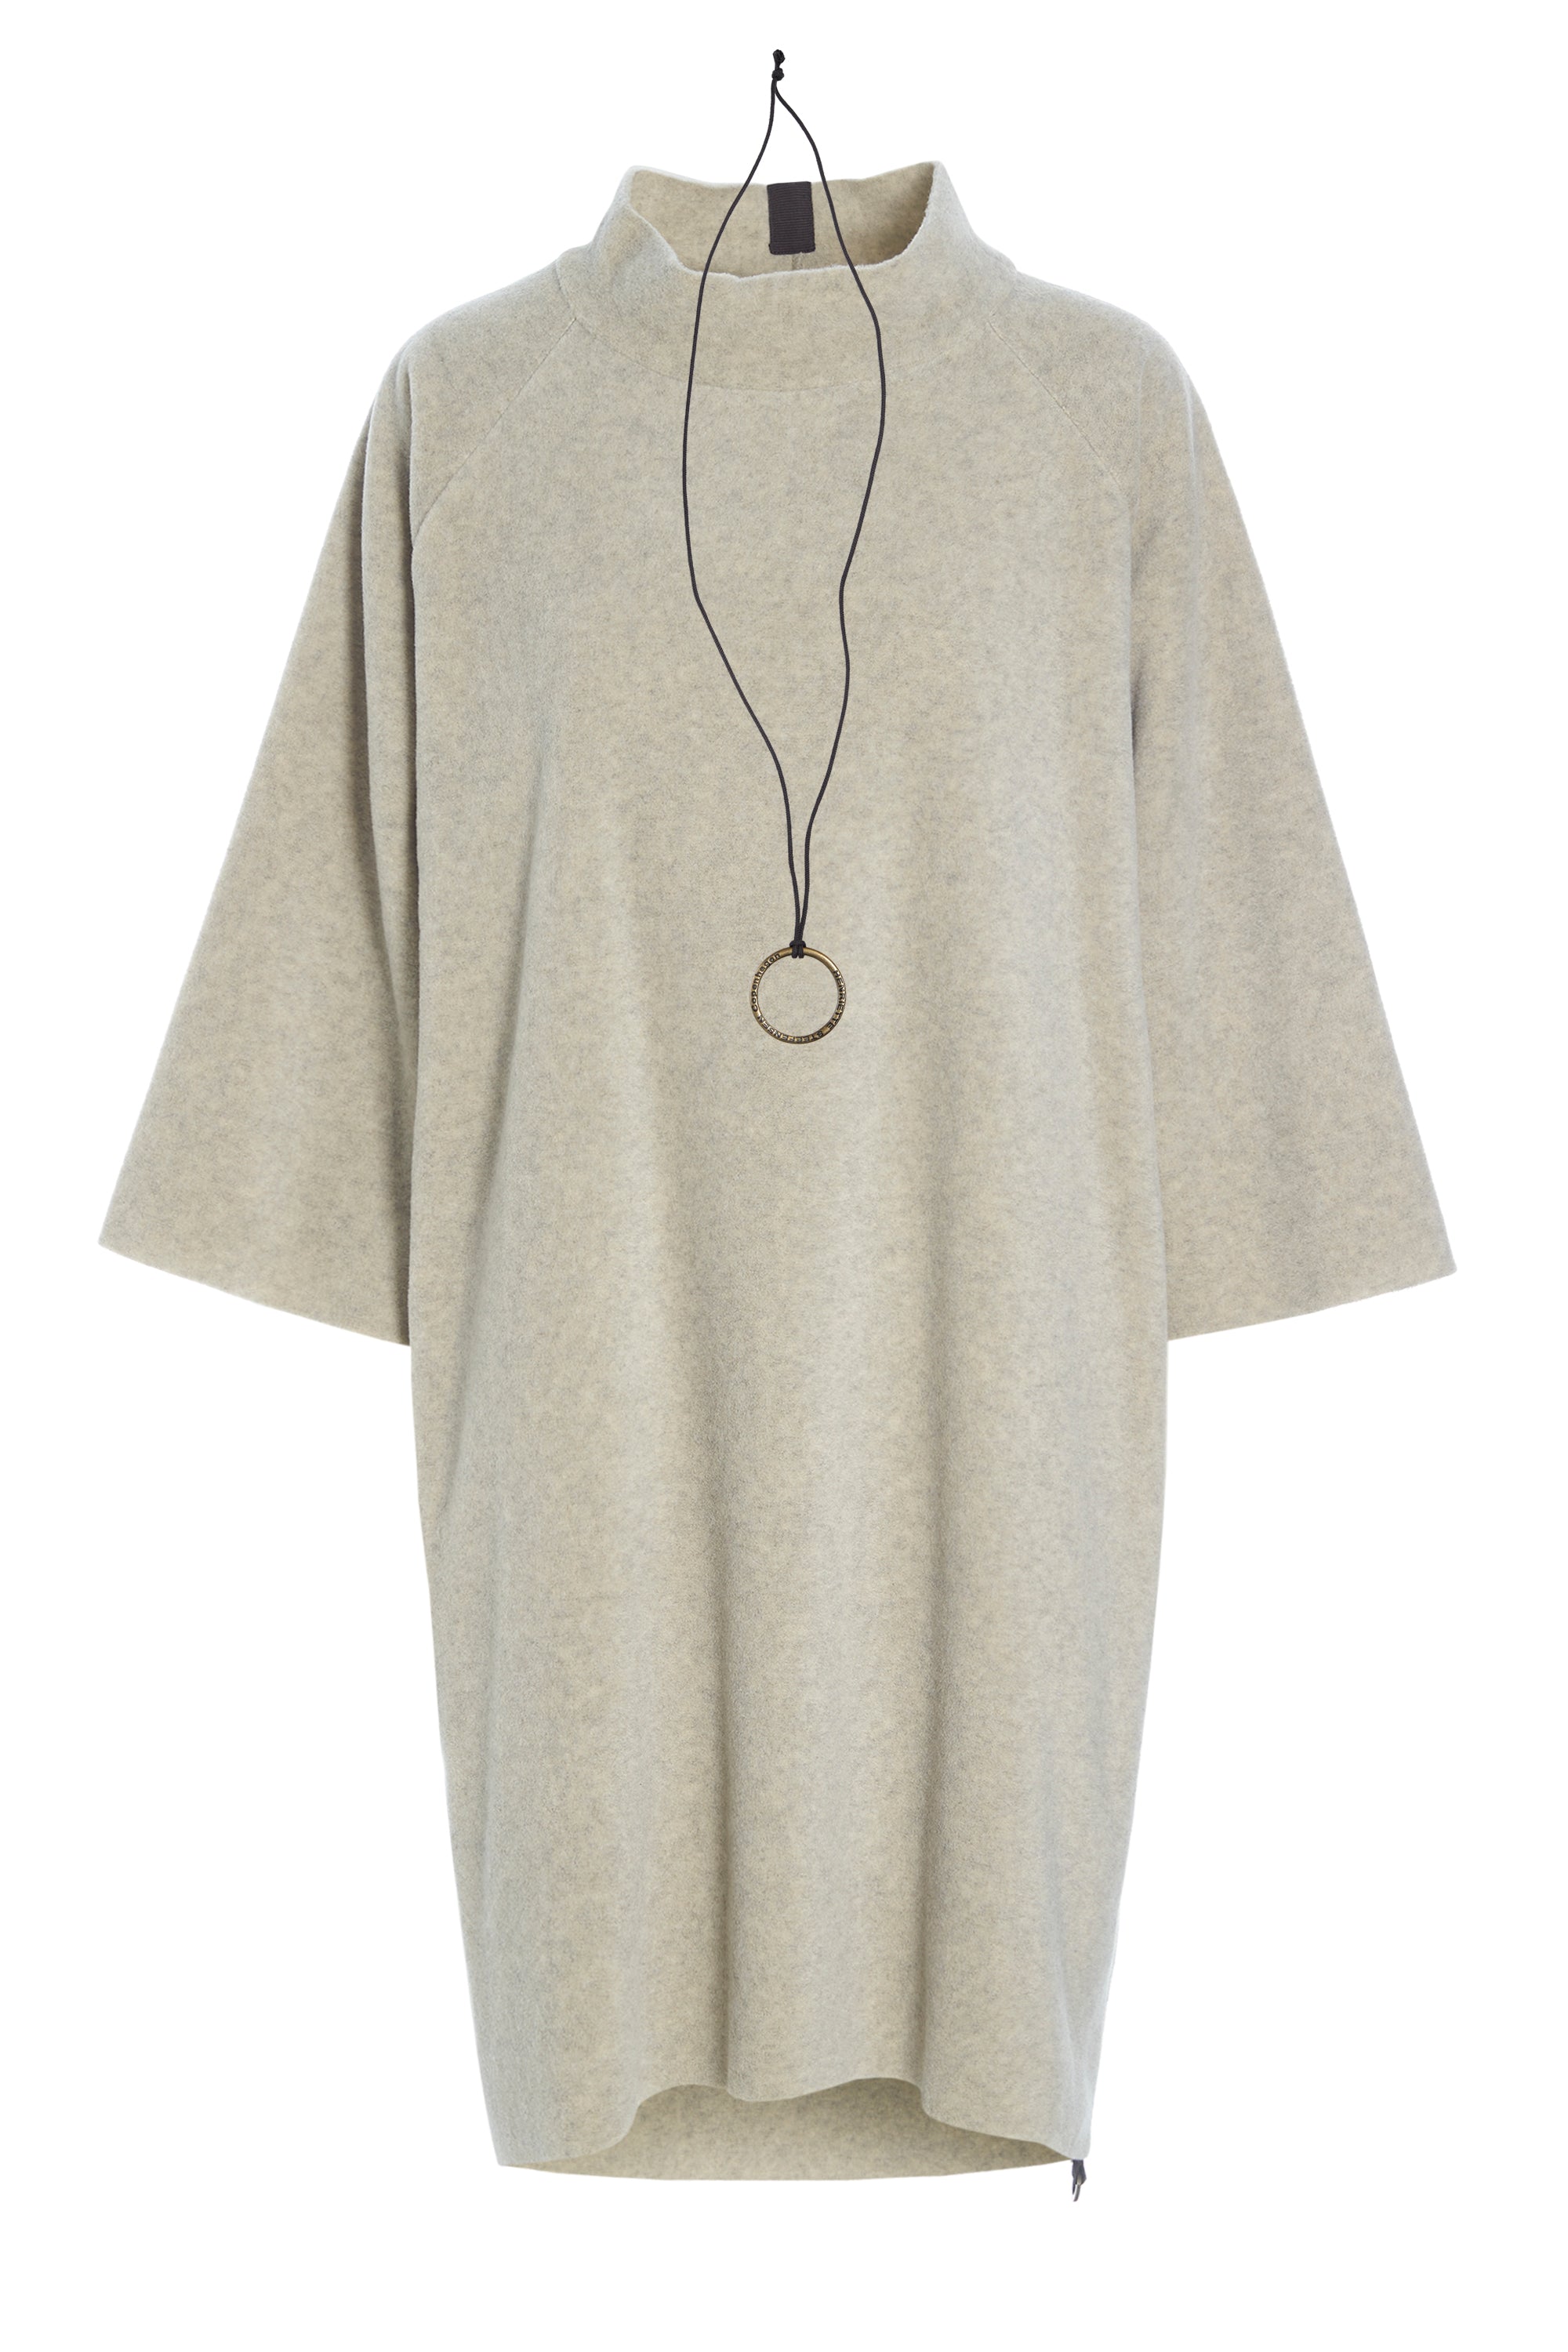 HENRIETTE STEFFENSEN Fleece Dress (3243)